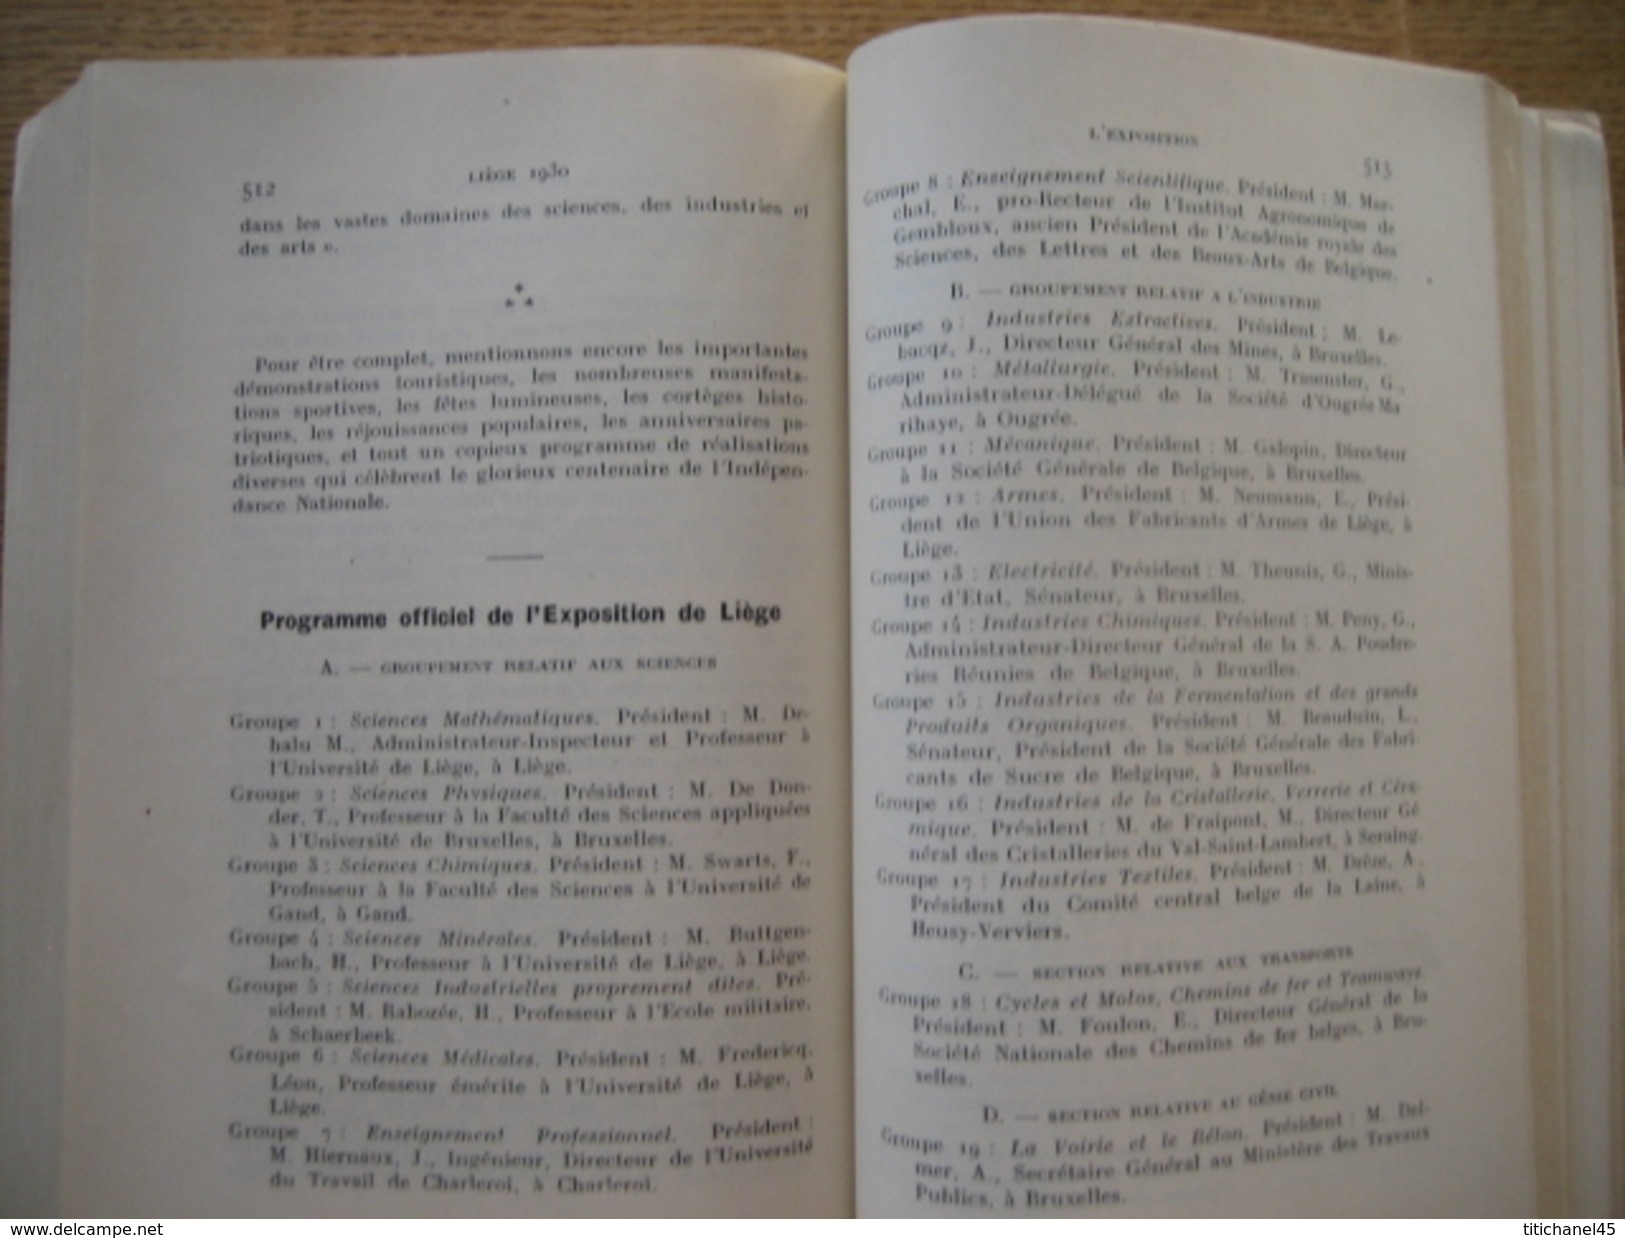 LIEGE 1930 - L'EXPOSITION INTERNATIONALE - LA VILLE - LA REGION + PLAN DE L'EXPOSITION - PLAN DE LA VILLE - 636 pages